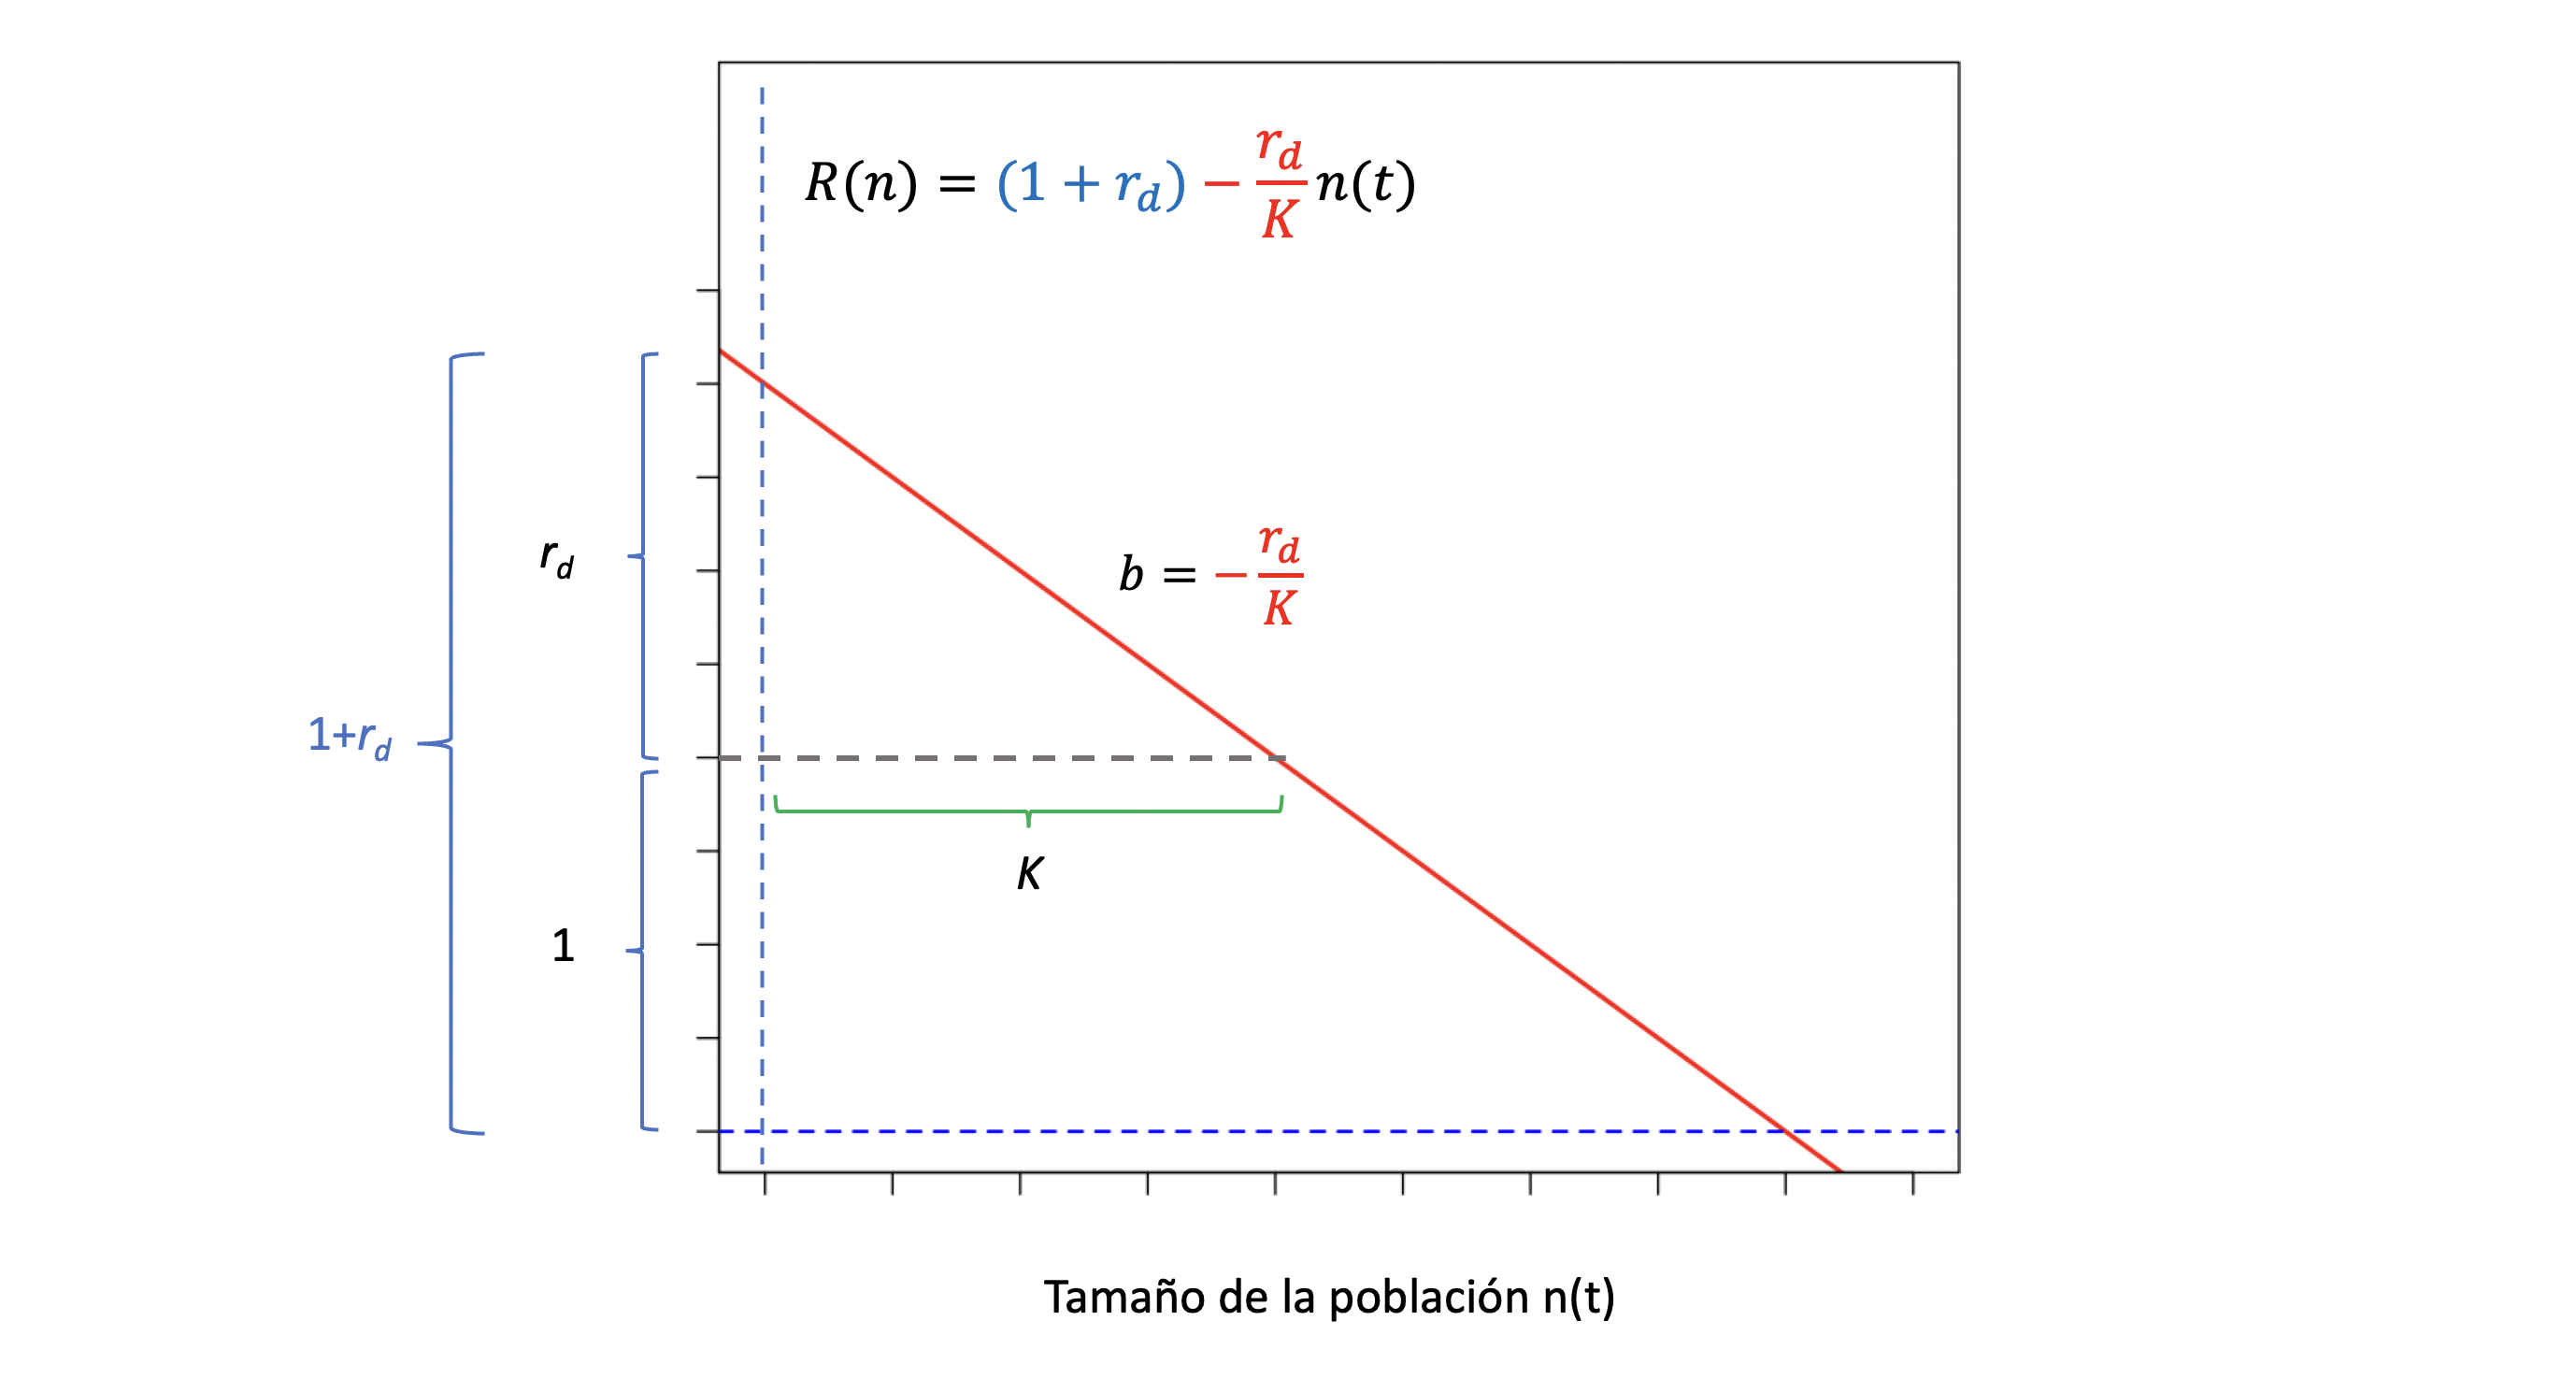 El factor reproductivo \(R(n)\) como función lineal del tamaño poblacional. La función lineal \(R(n)=(1+r_d)-\frac{r_d}{K}n(t)\) podemos entenderla como la suma de intercepto igual a \((1+r_d)\), es decir el factor reproductivo cuando no existen limitaciones impuestas por la población (ya que \(n(t)=0\)) y un cambio en función de \(n(t)\) con pendiente \(b=-\frac{r_d}{K}\). Elaboración propia sobre idea de Otto y Day (Otto and Day 2007).